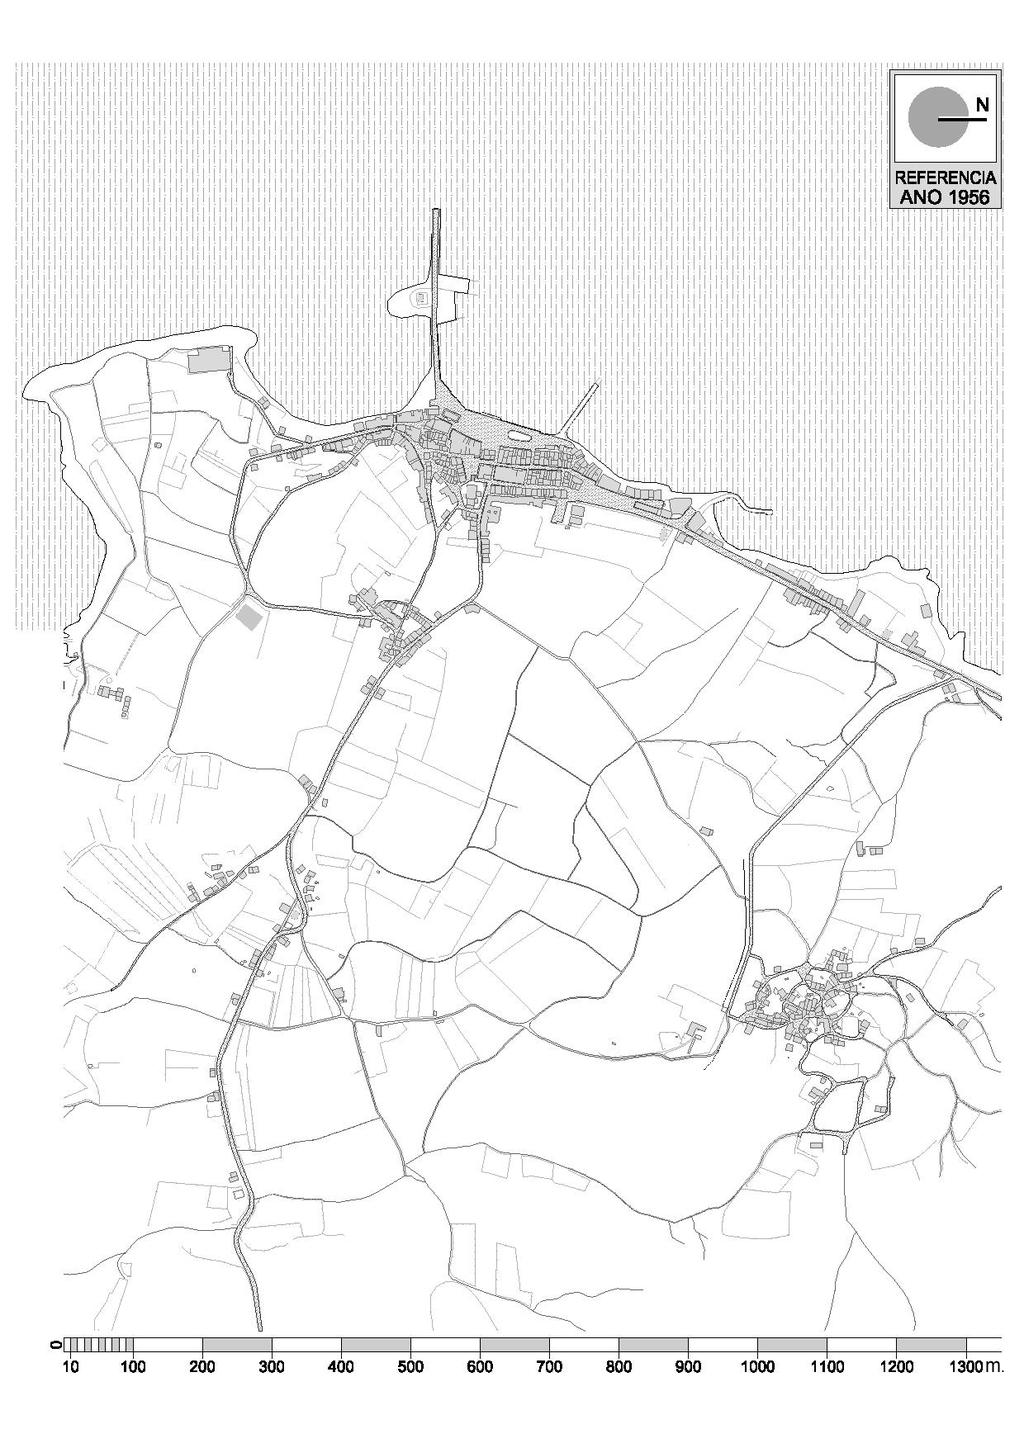 A transformación de Rianxo na 2ª metade do século XX (1956-2012) Rianxo en 1956 Mapa de Rianxo do estado presentado no ano 1956.